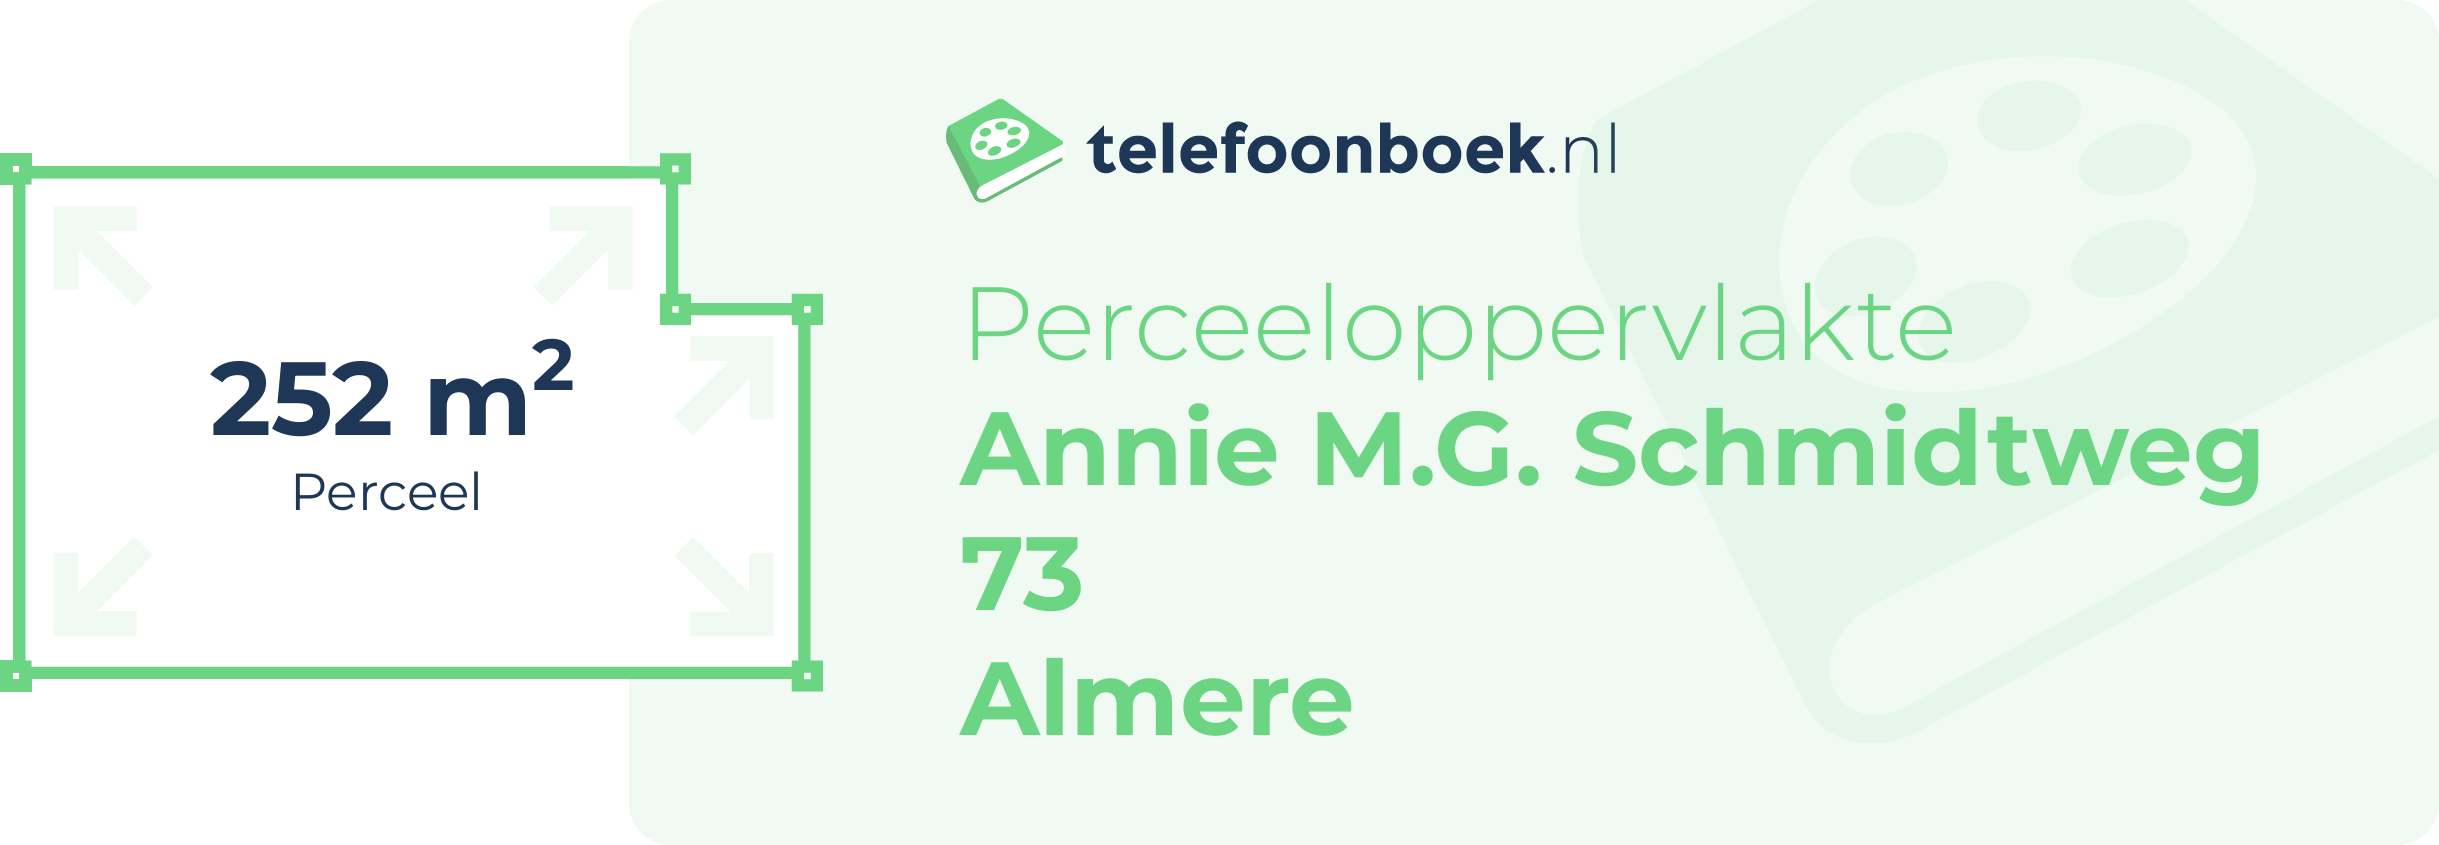 Perceeloppervlakte Annie M.G. Schmidtweg 73 Almere